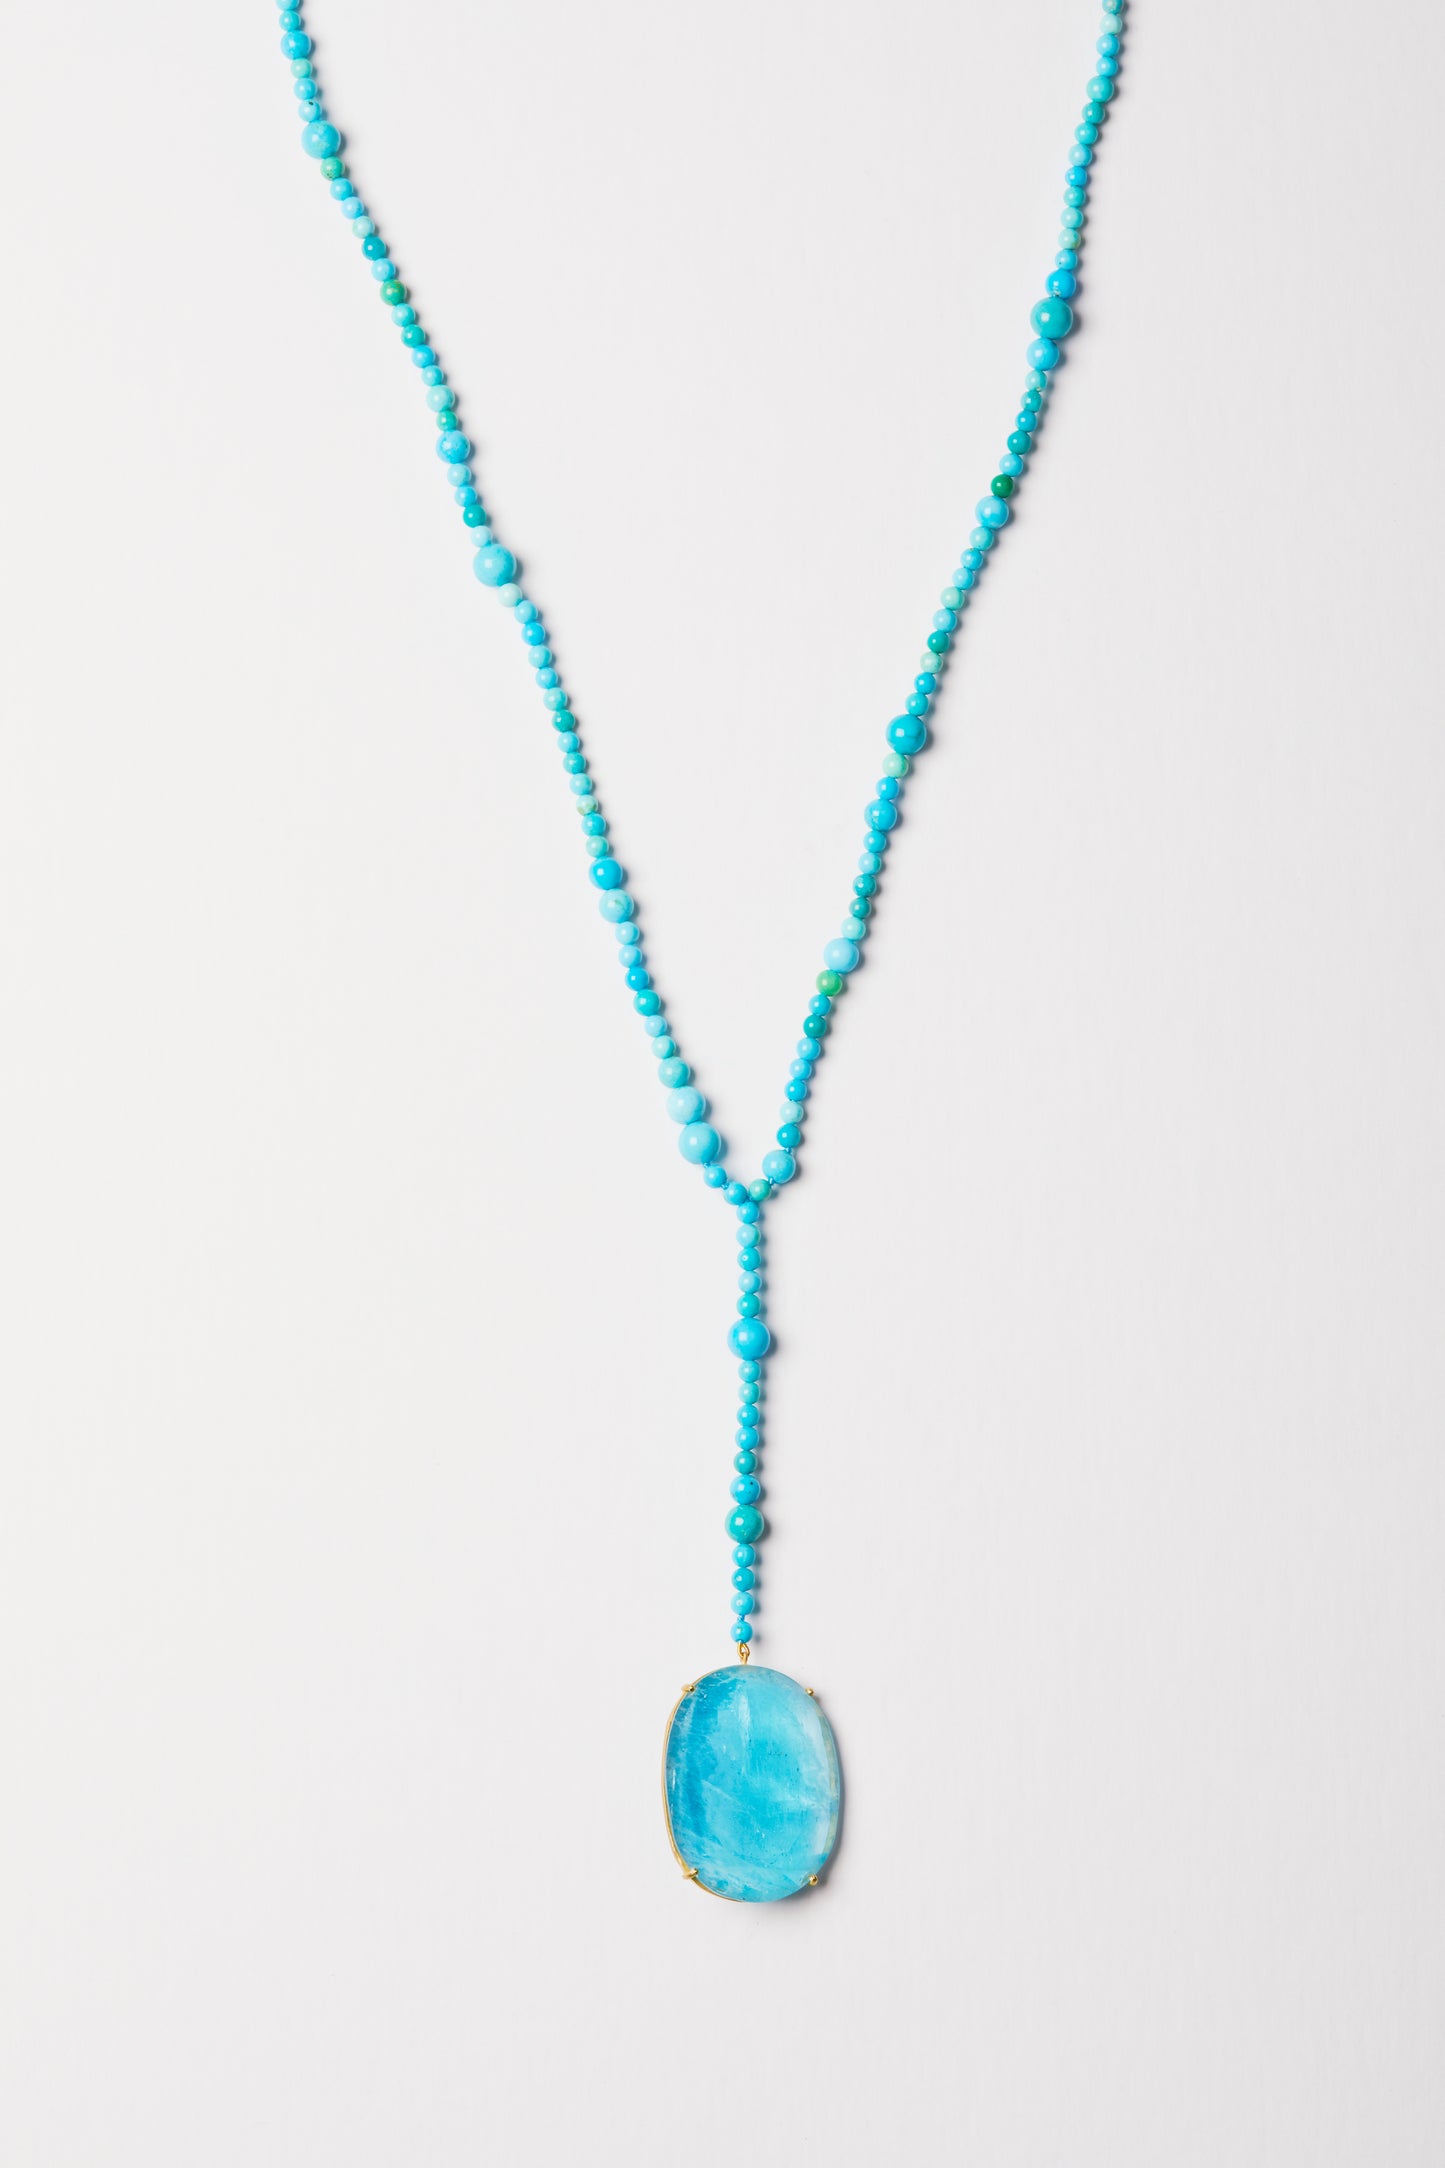 Turquoise Beads with Large Aquamarine Pendant